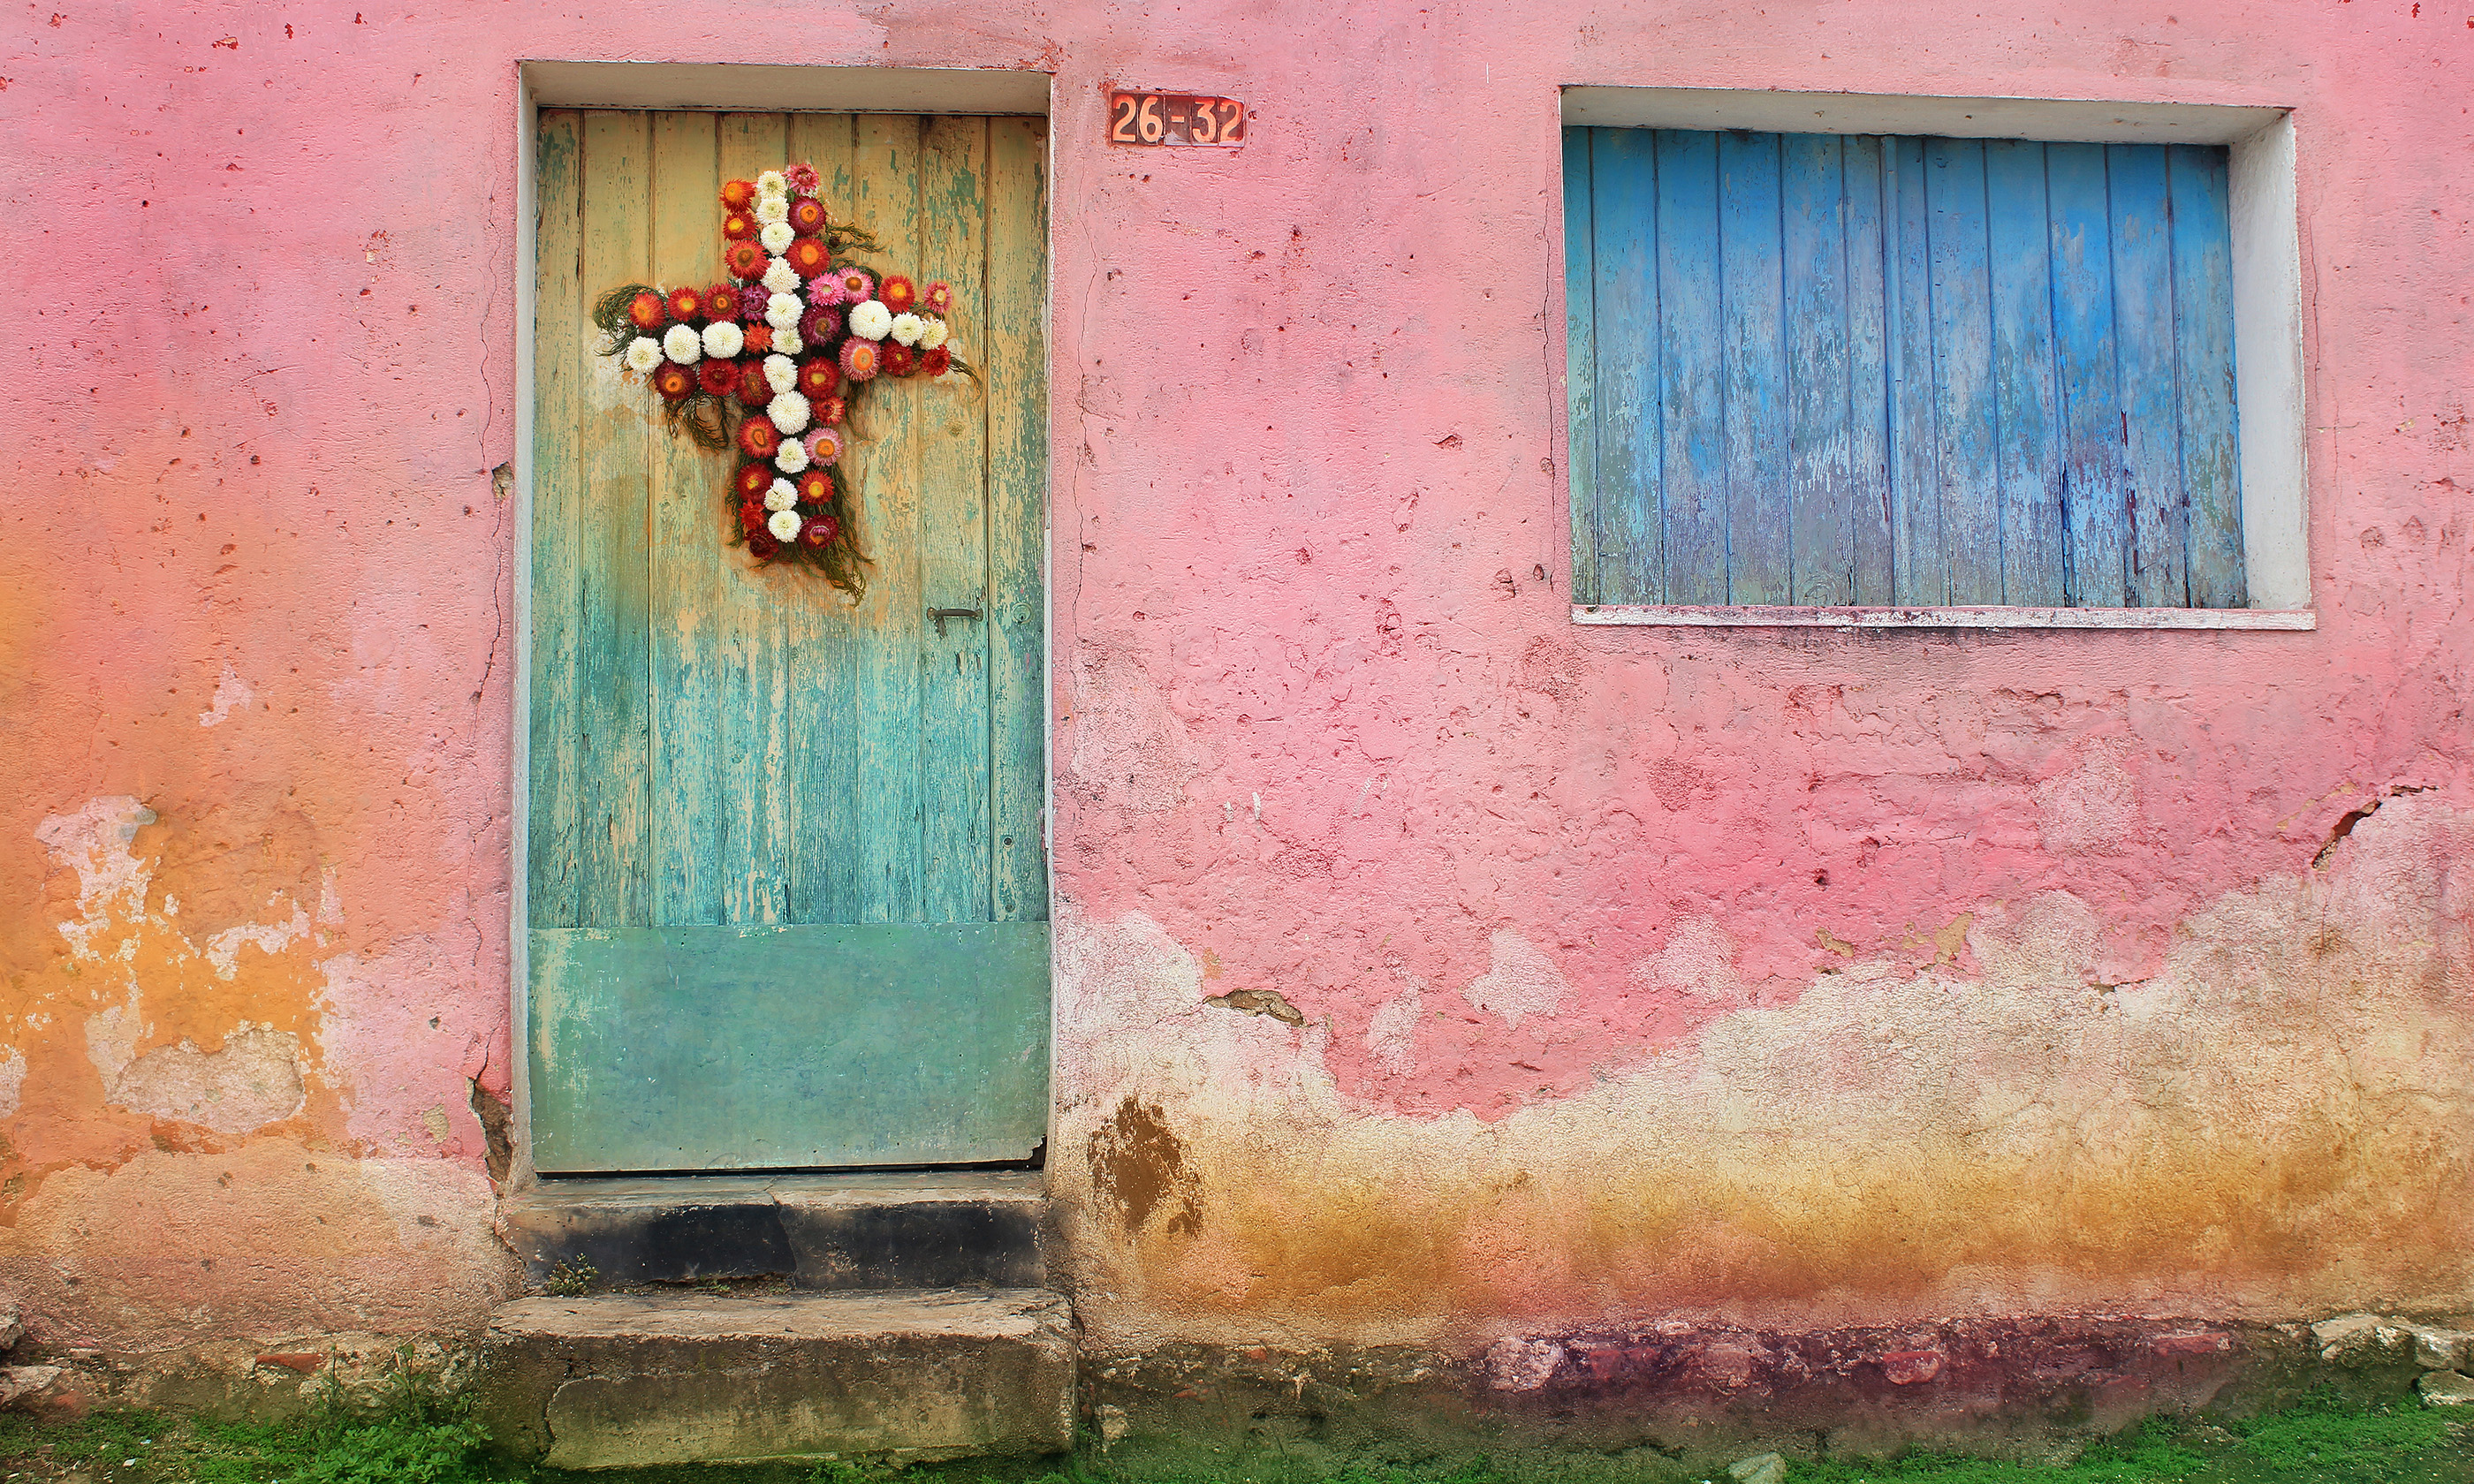 Decorated door, Guatemala City (Shutterstock: see credit below)